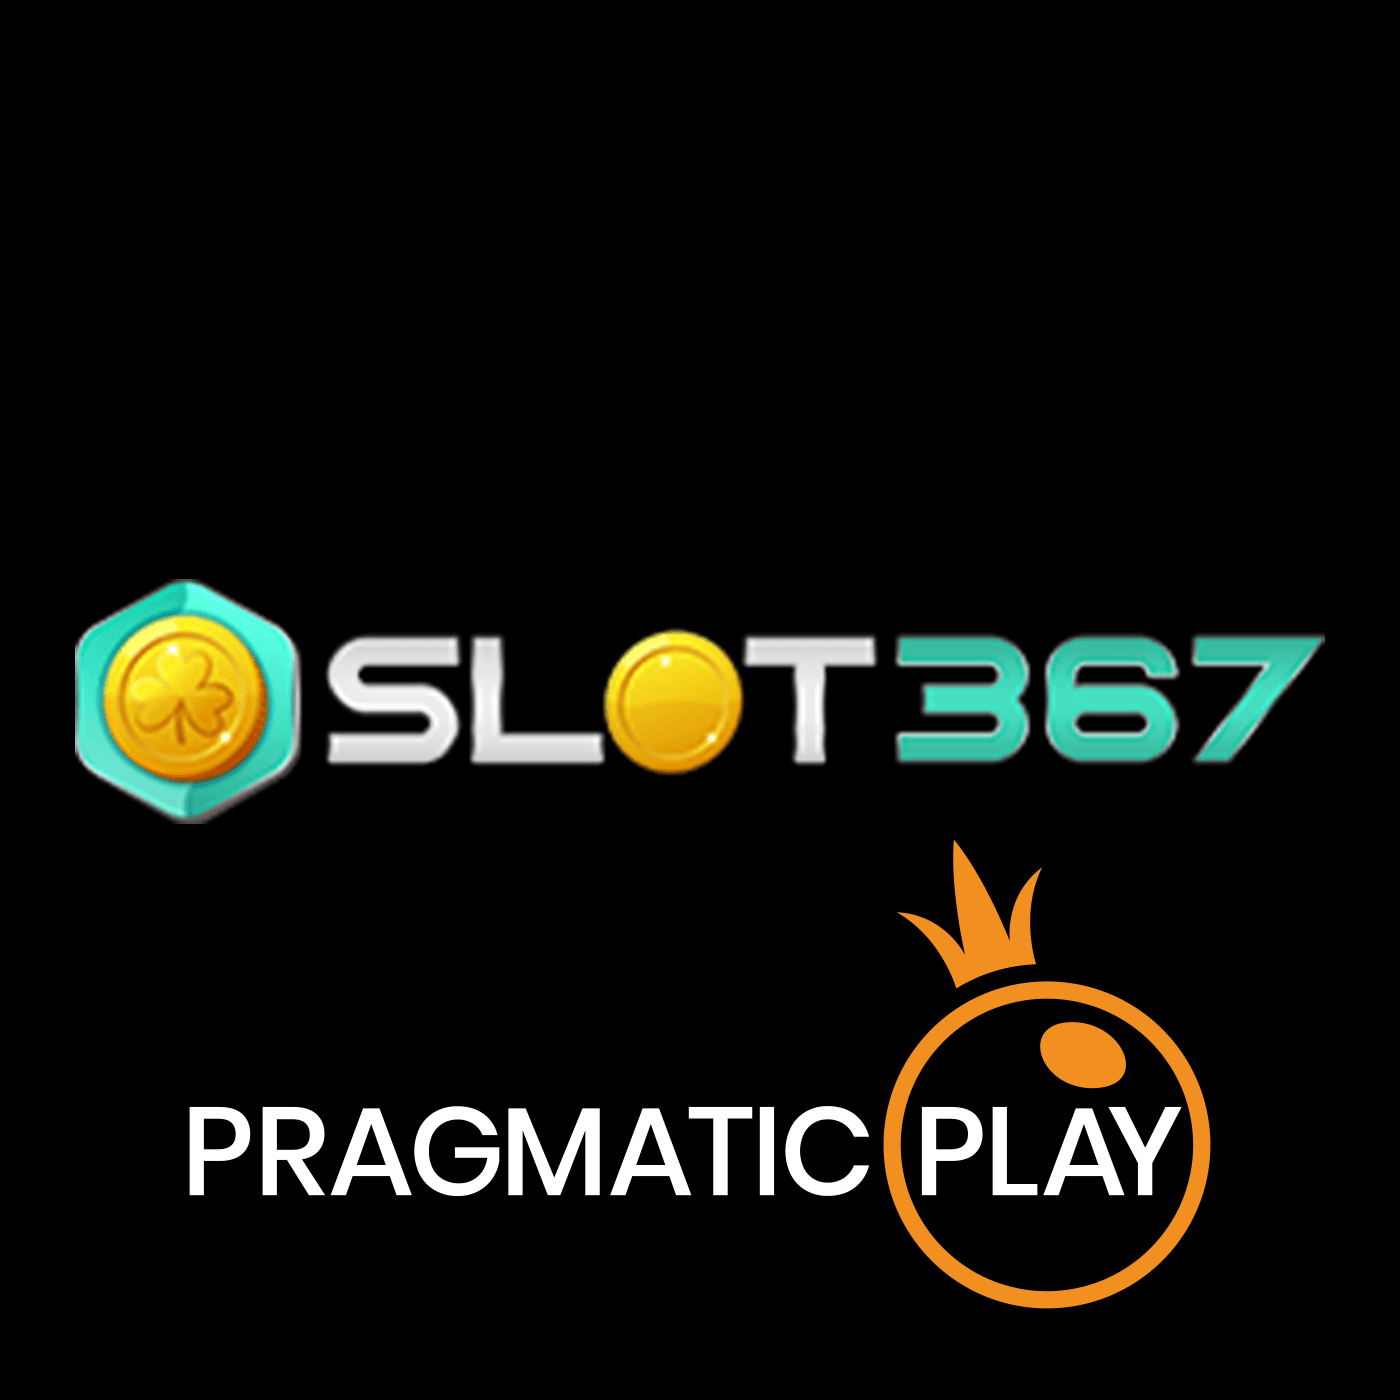 Slot367 banner